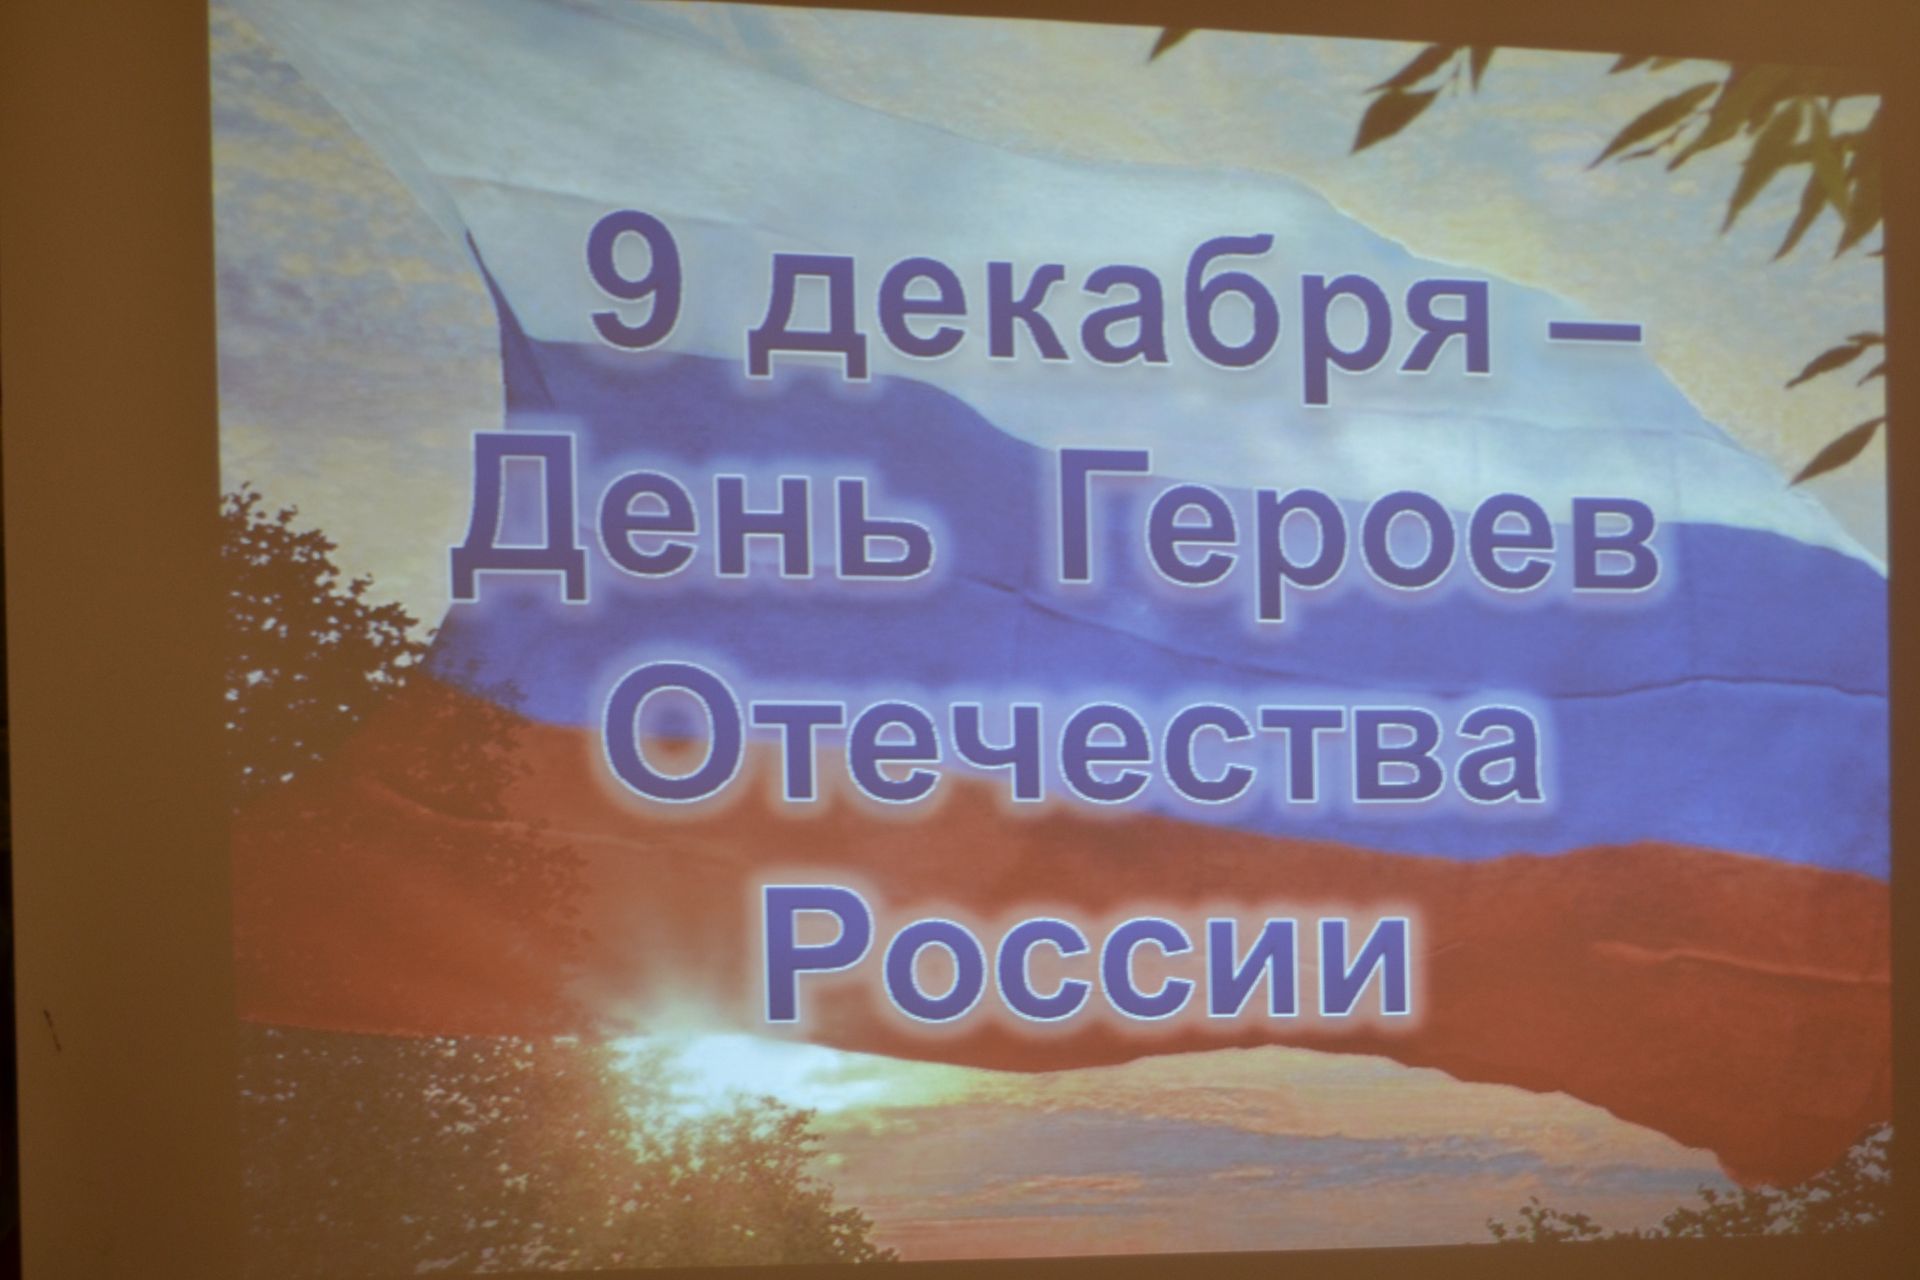 В посёлке Татарстан отметили День Героев Отечества